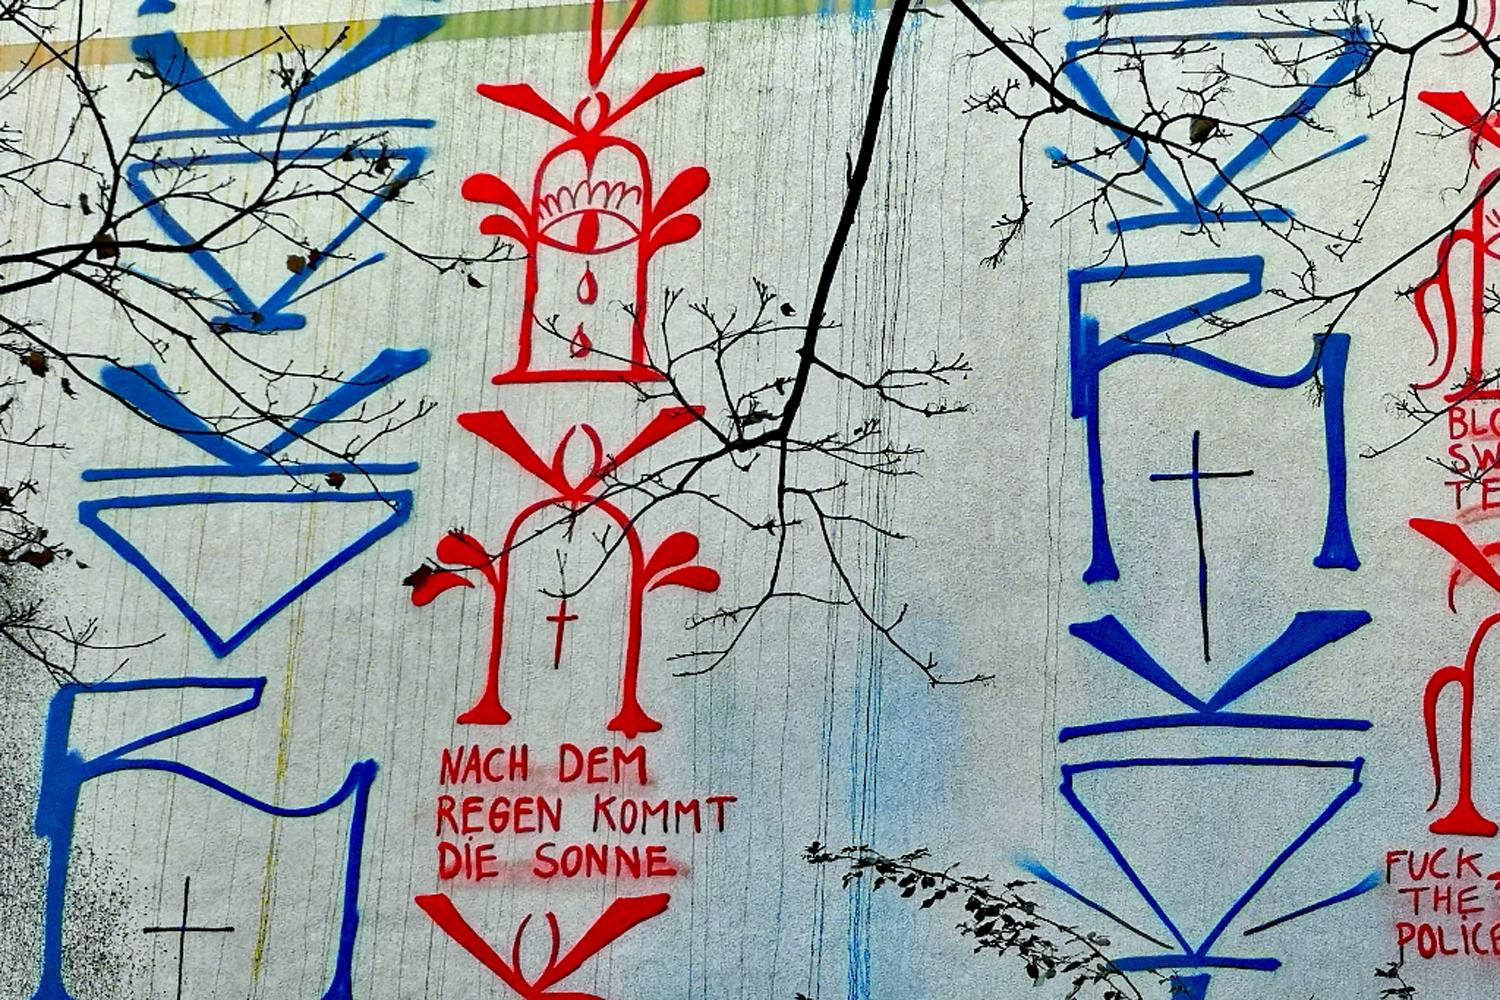 Der Schriftzug "Nach dem Regen kommt die Sonne" von den Berliner Kidz ziert die Hauswand